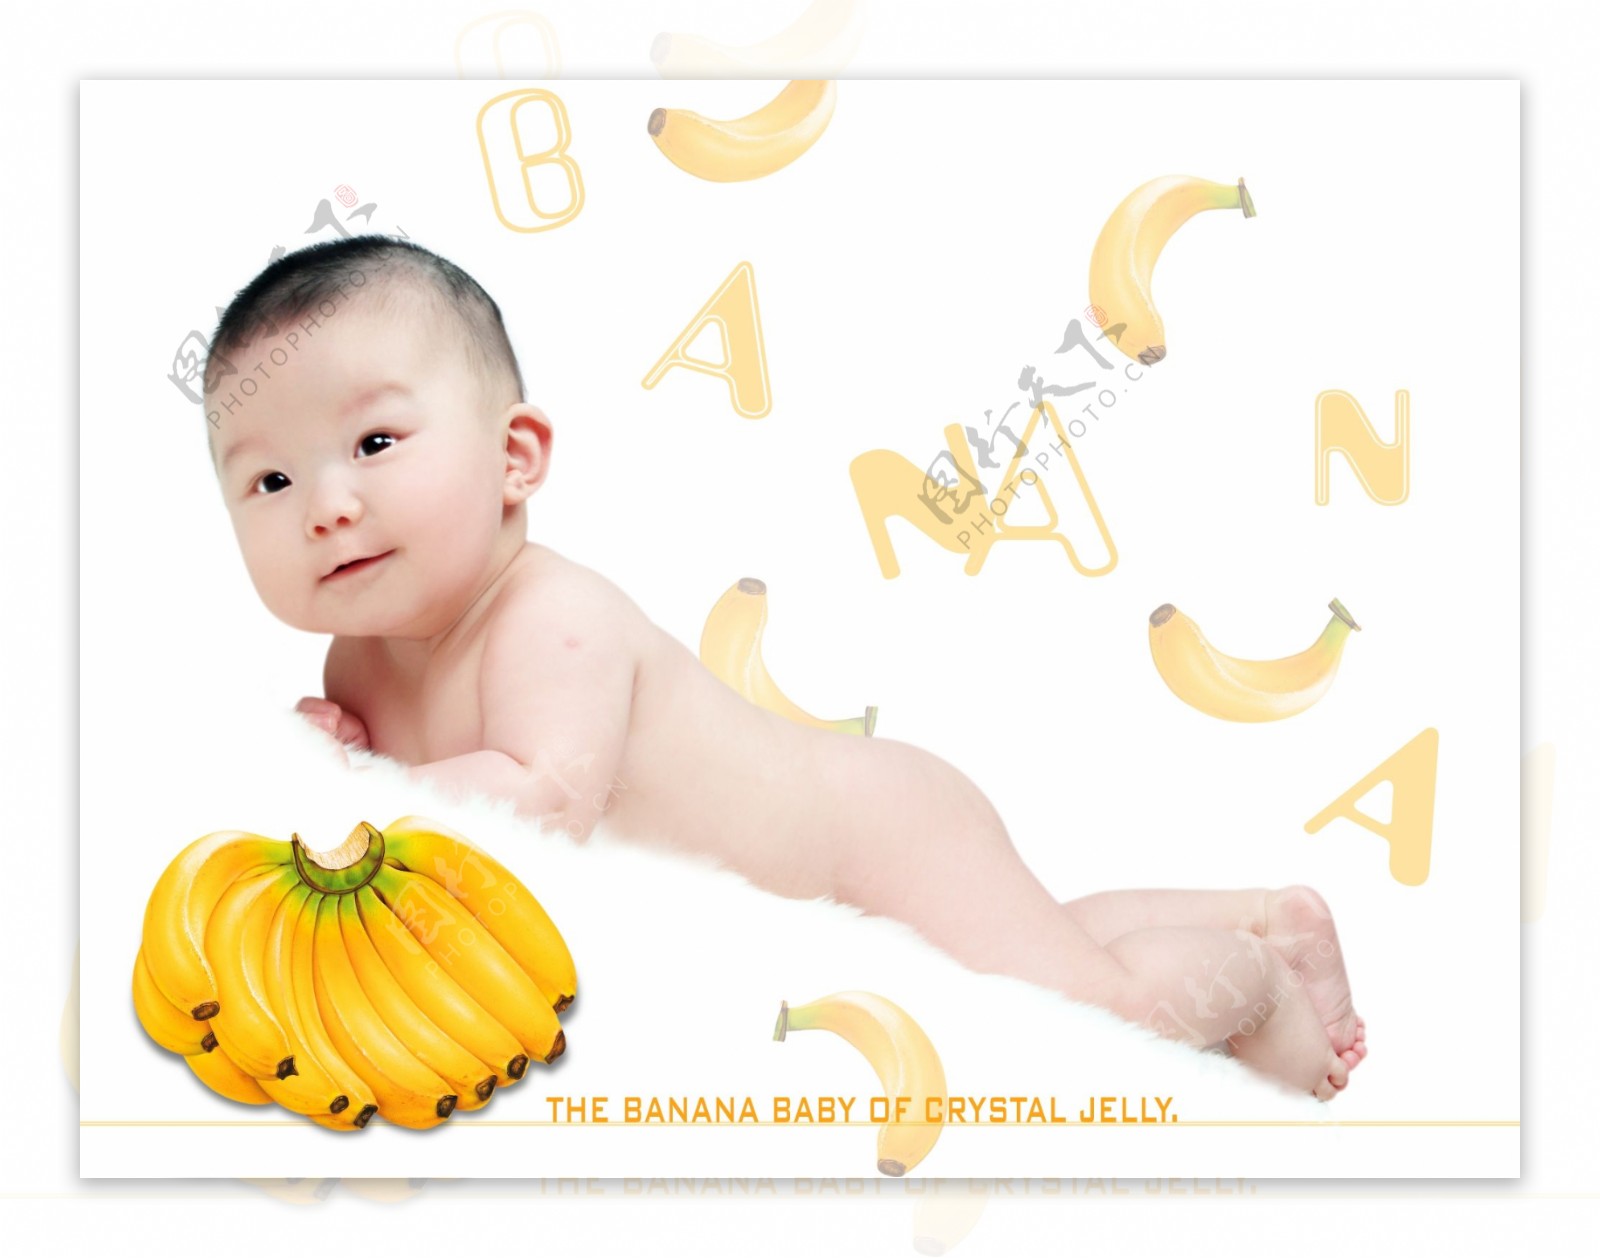 儿童相册模板水果宝宝图片